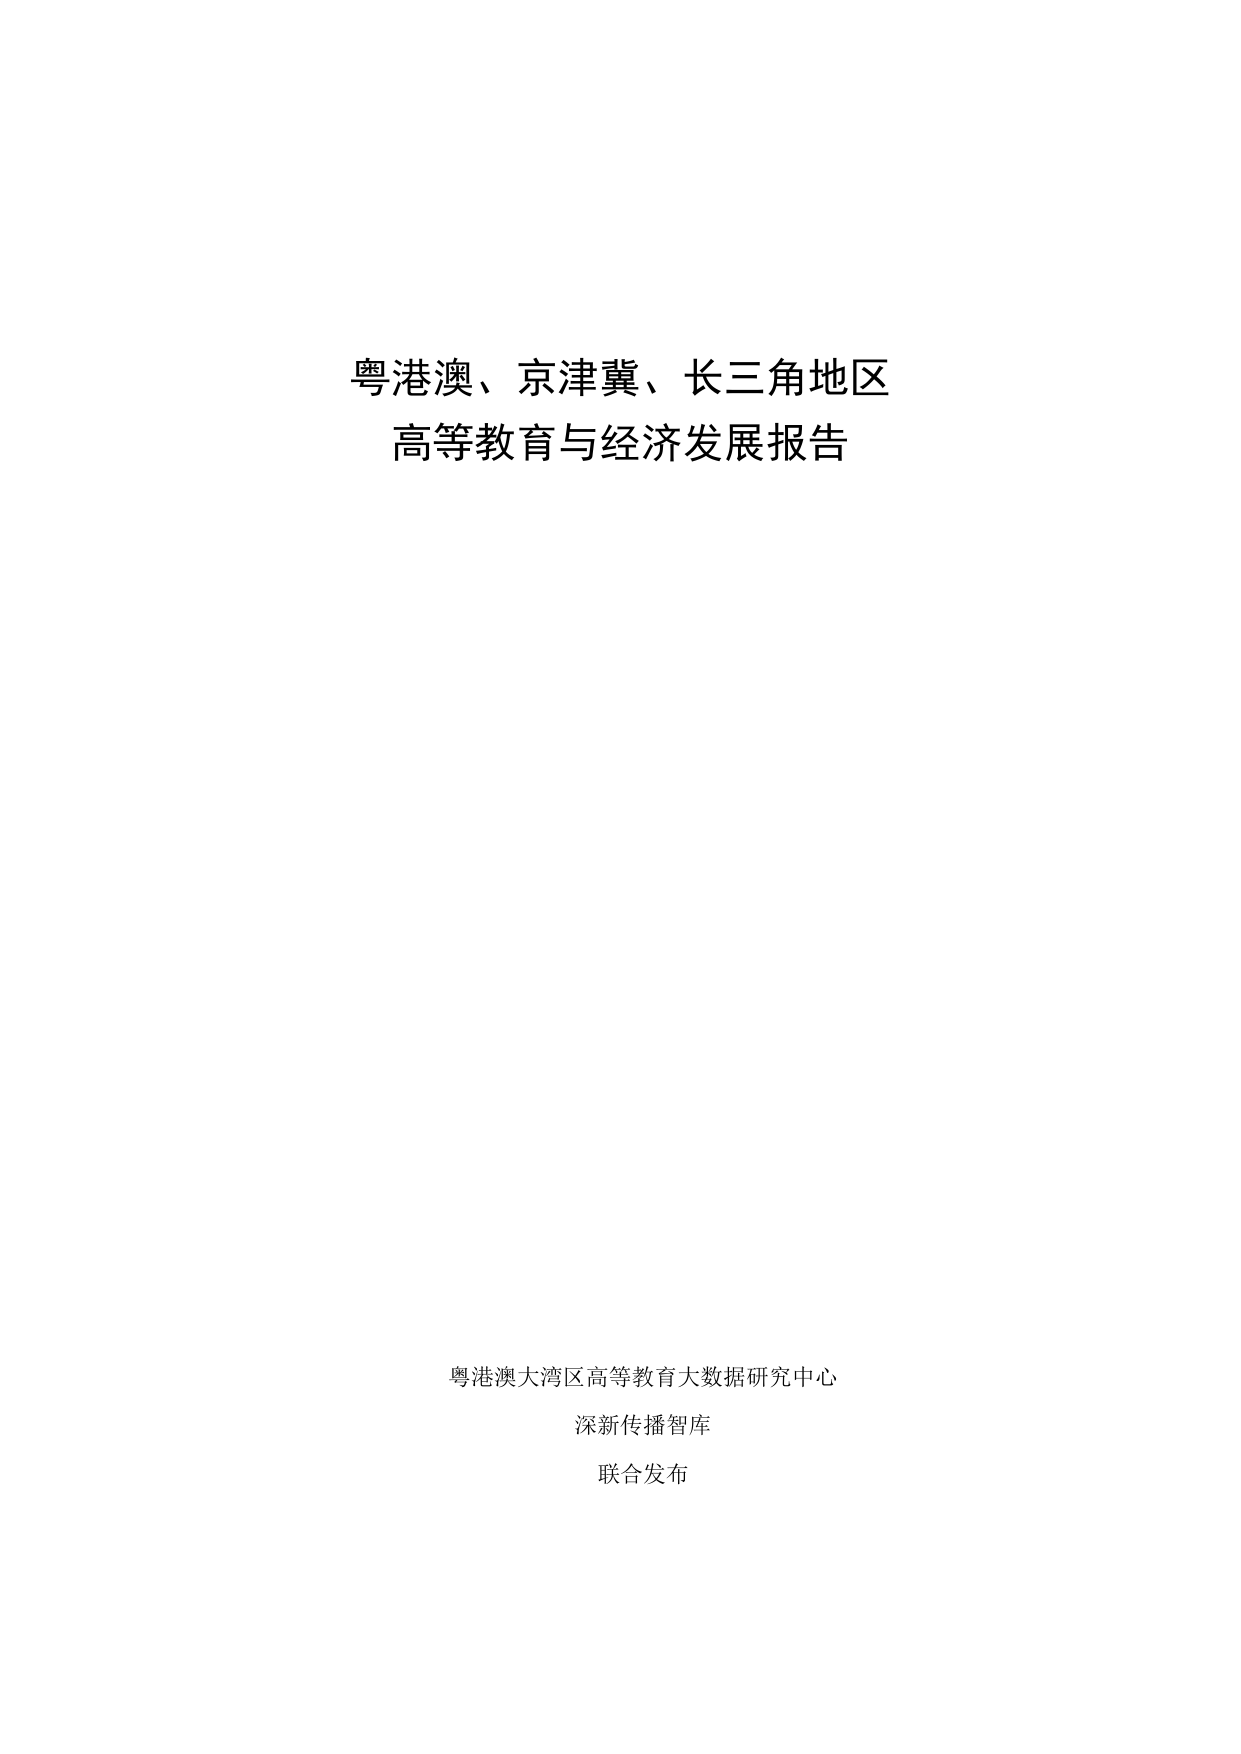 粤港澳、京津冀、长三角地区高等教育与经济发展报告.pdf